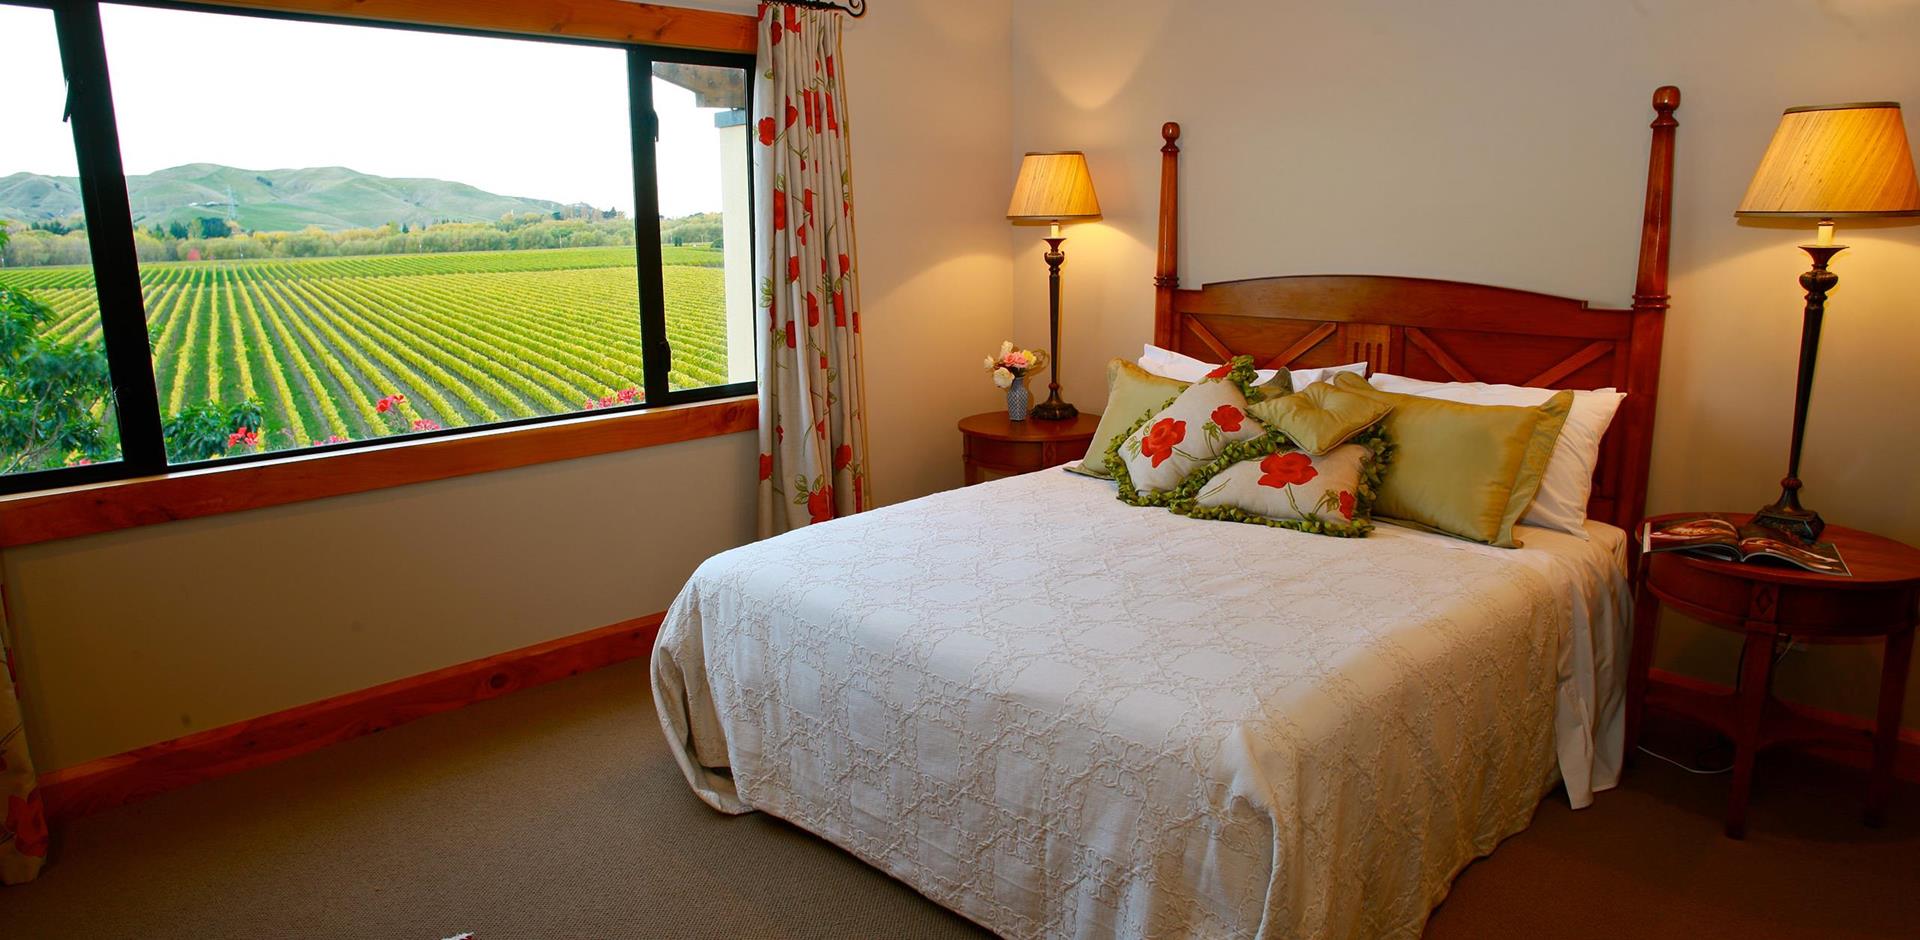 Bedroom, Breckenridge Lodge, New Zealand